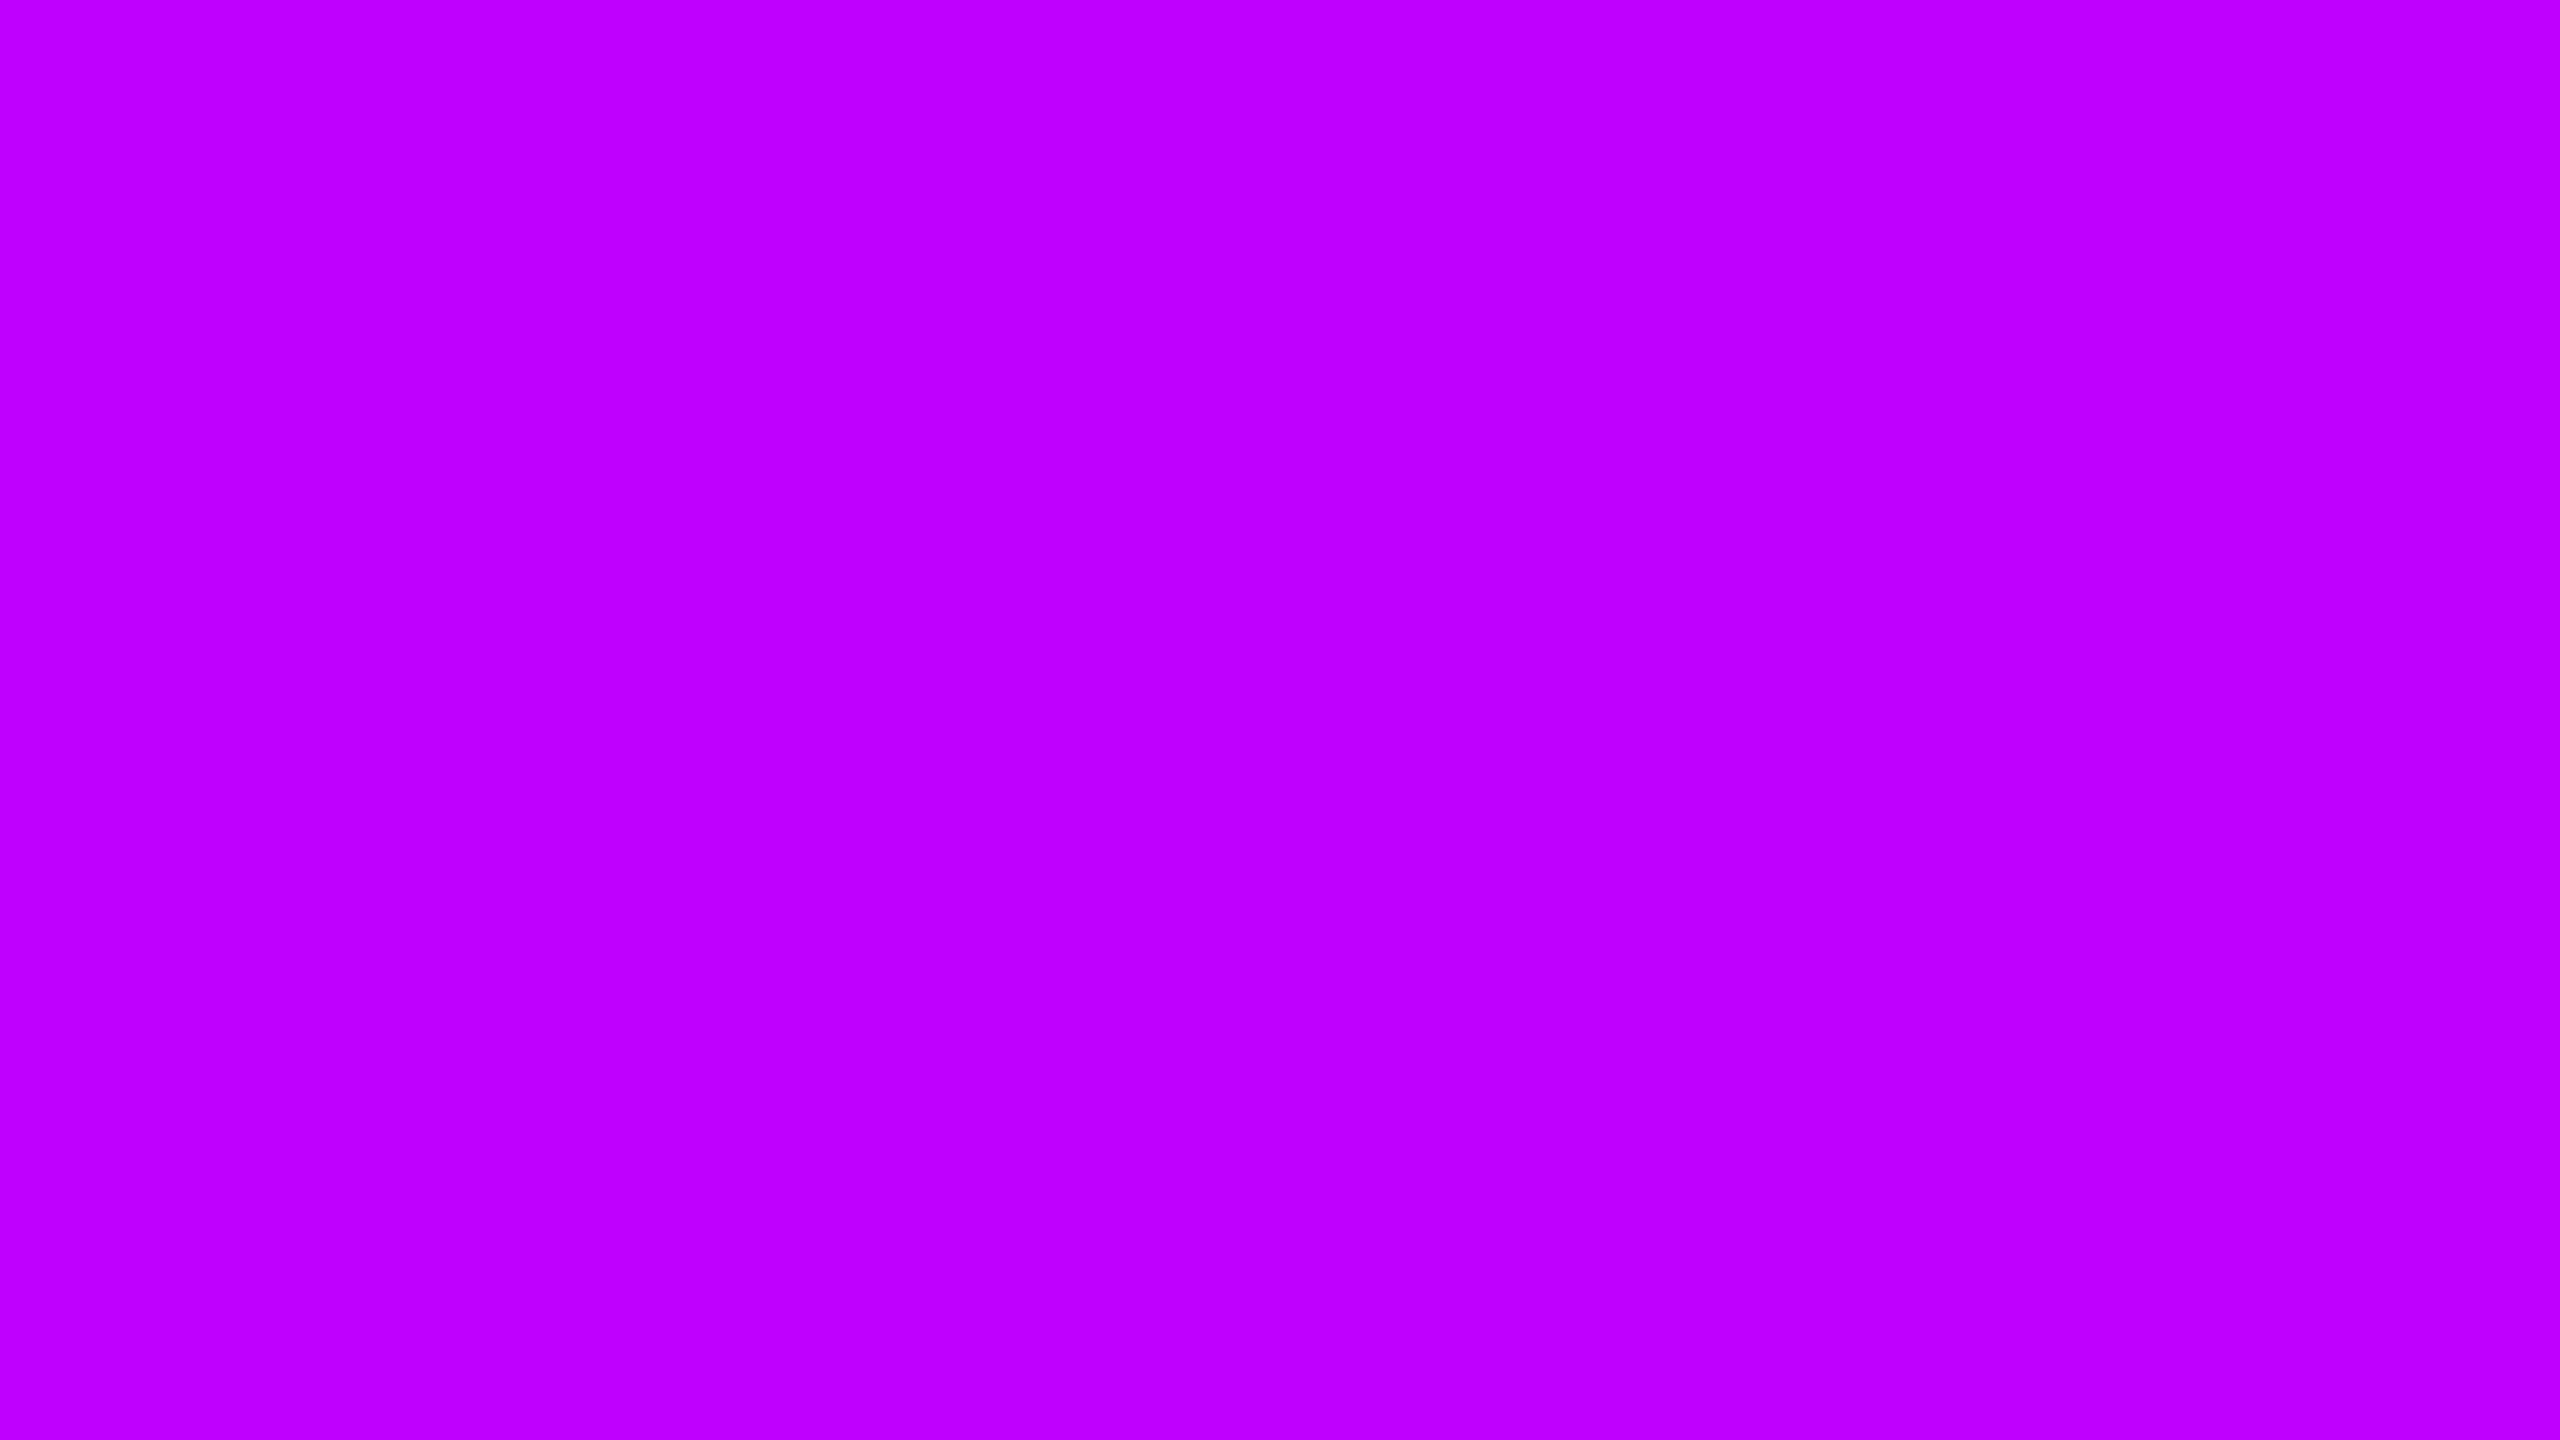  75 Purple  Color  Wallpaper on WallpaperSafari